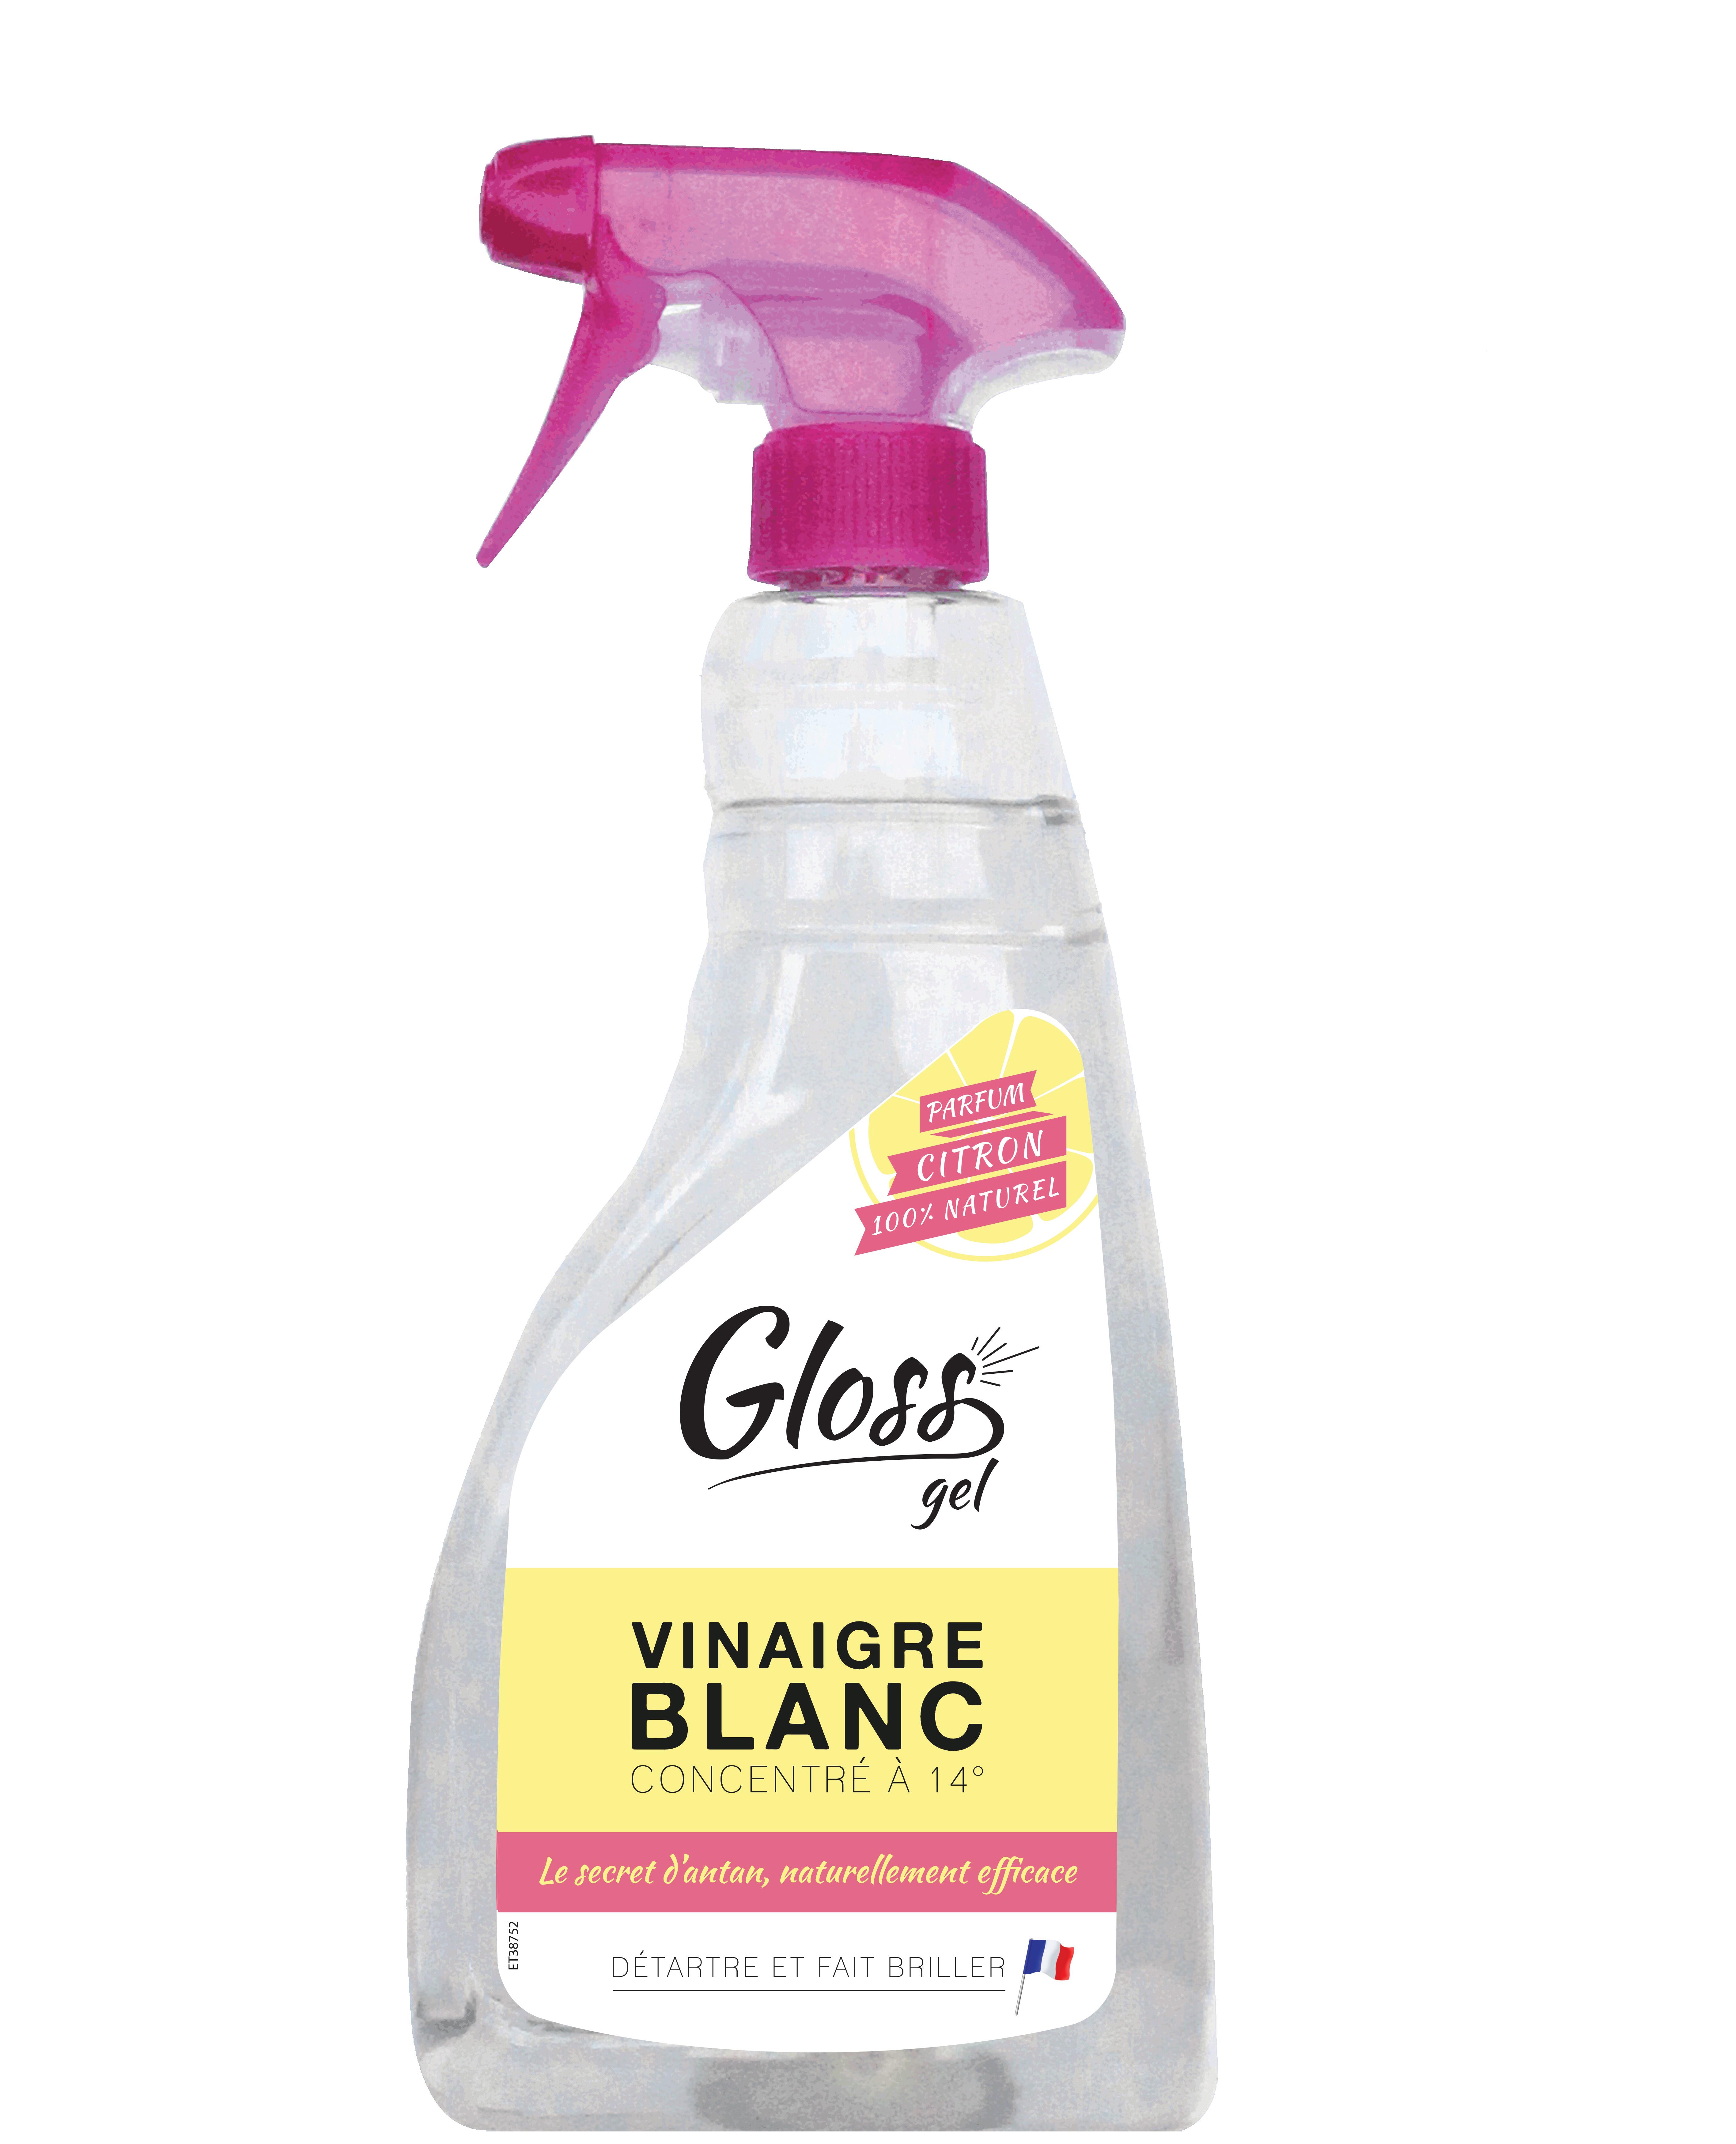 Spray nettoyant multi usage au vinaigre blanc, la désinfection écolo!